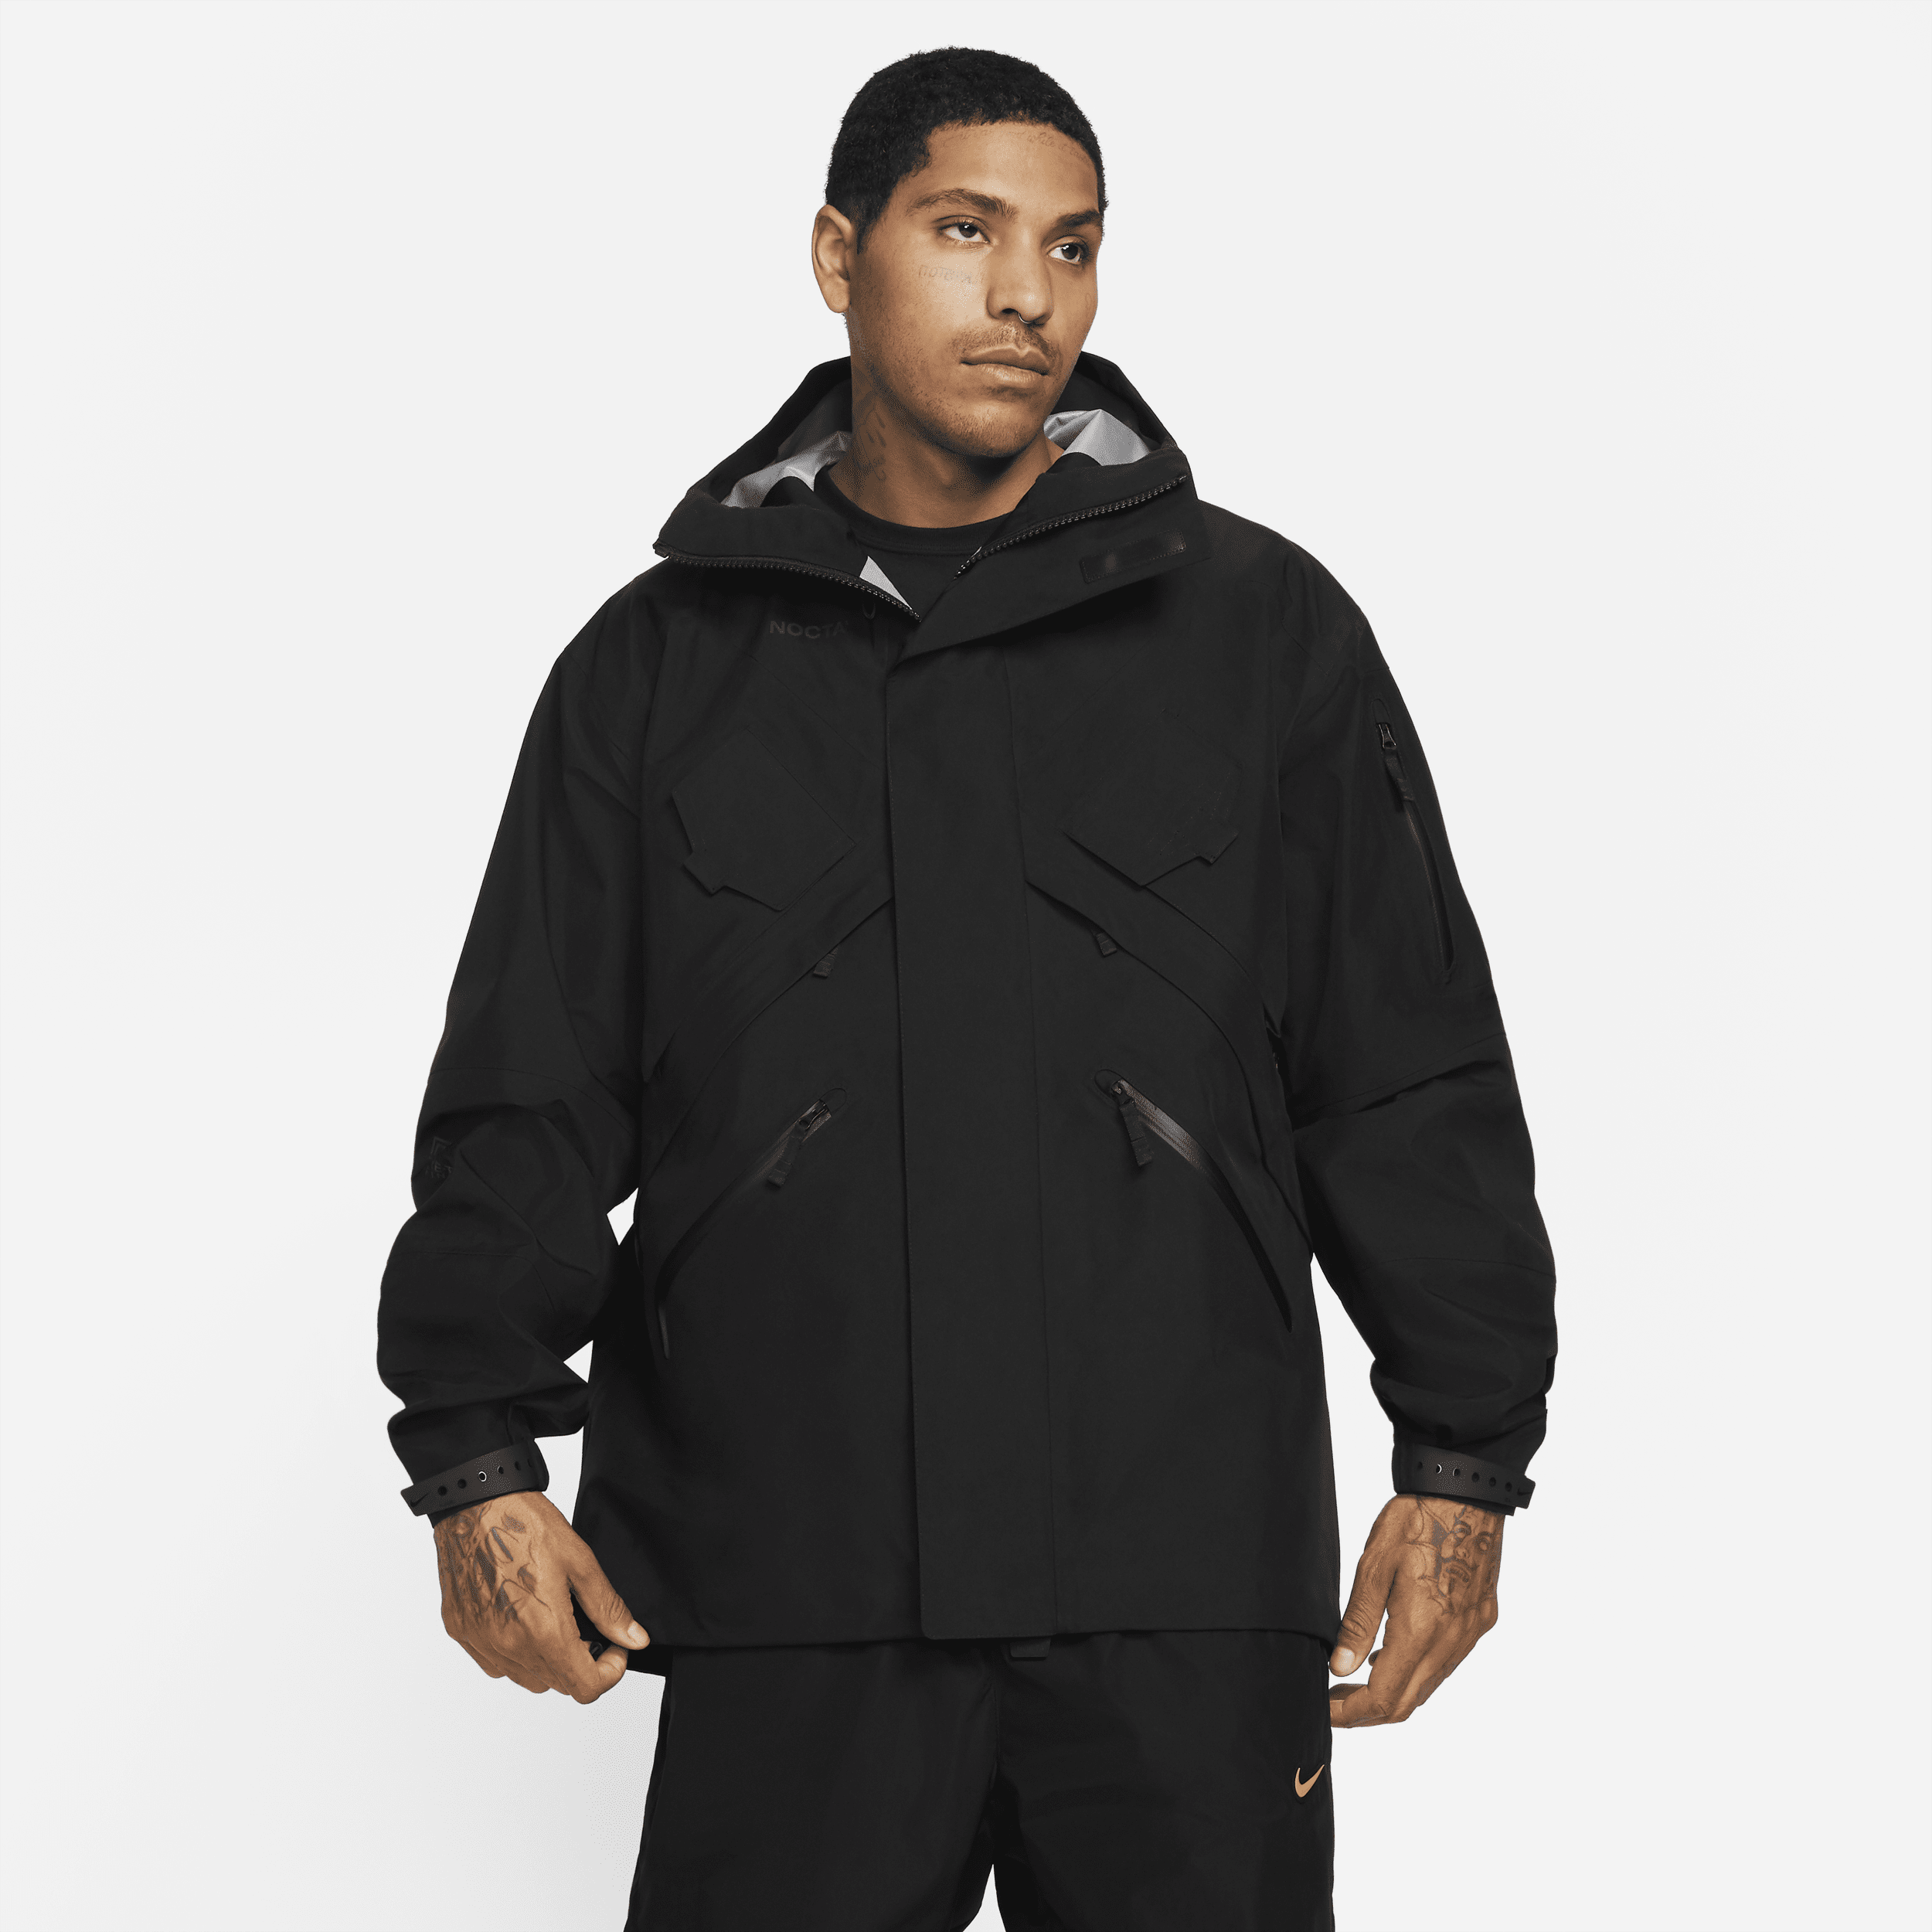 Nike Men's Nocta Tech Jacket In Black